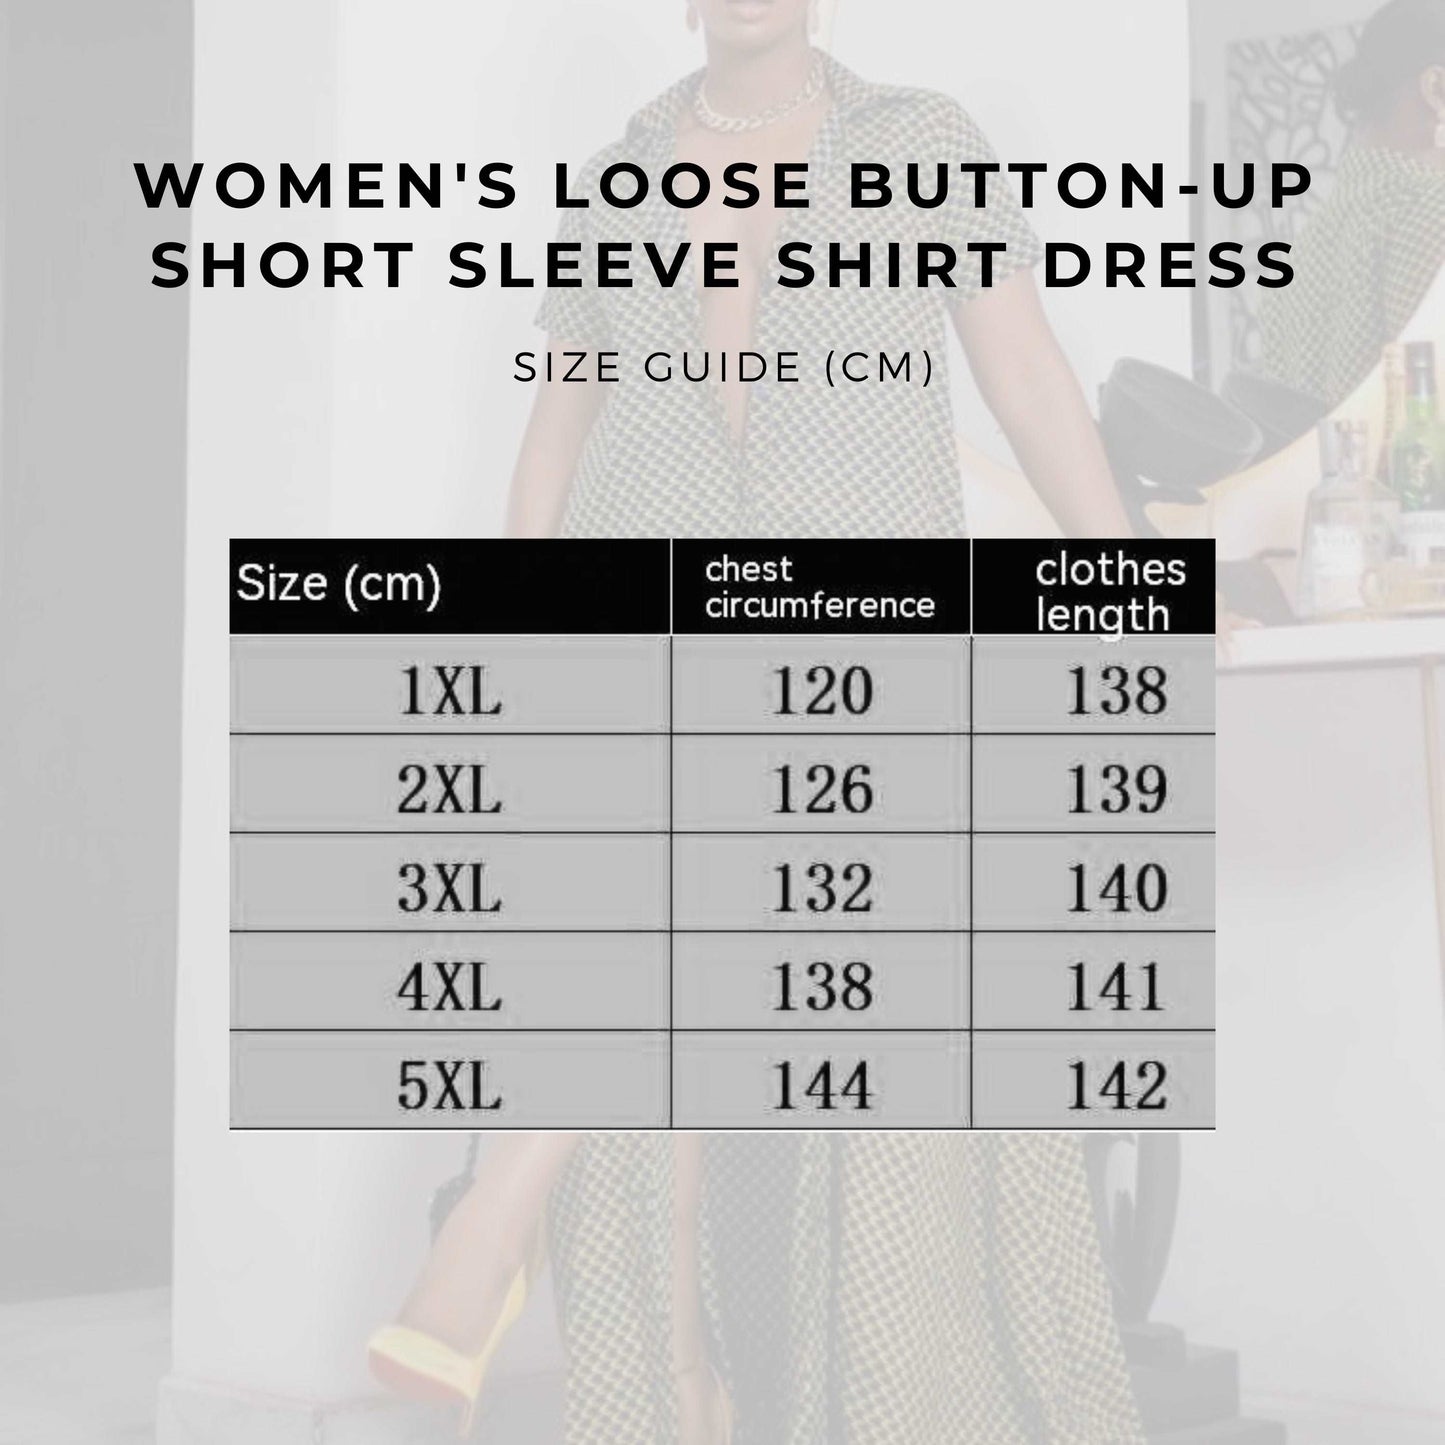 Women's Loose Button-up Short Sleeve Shirt Dress